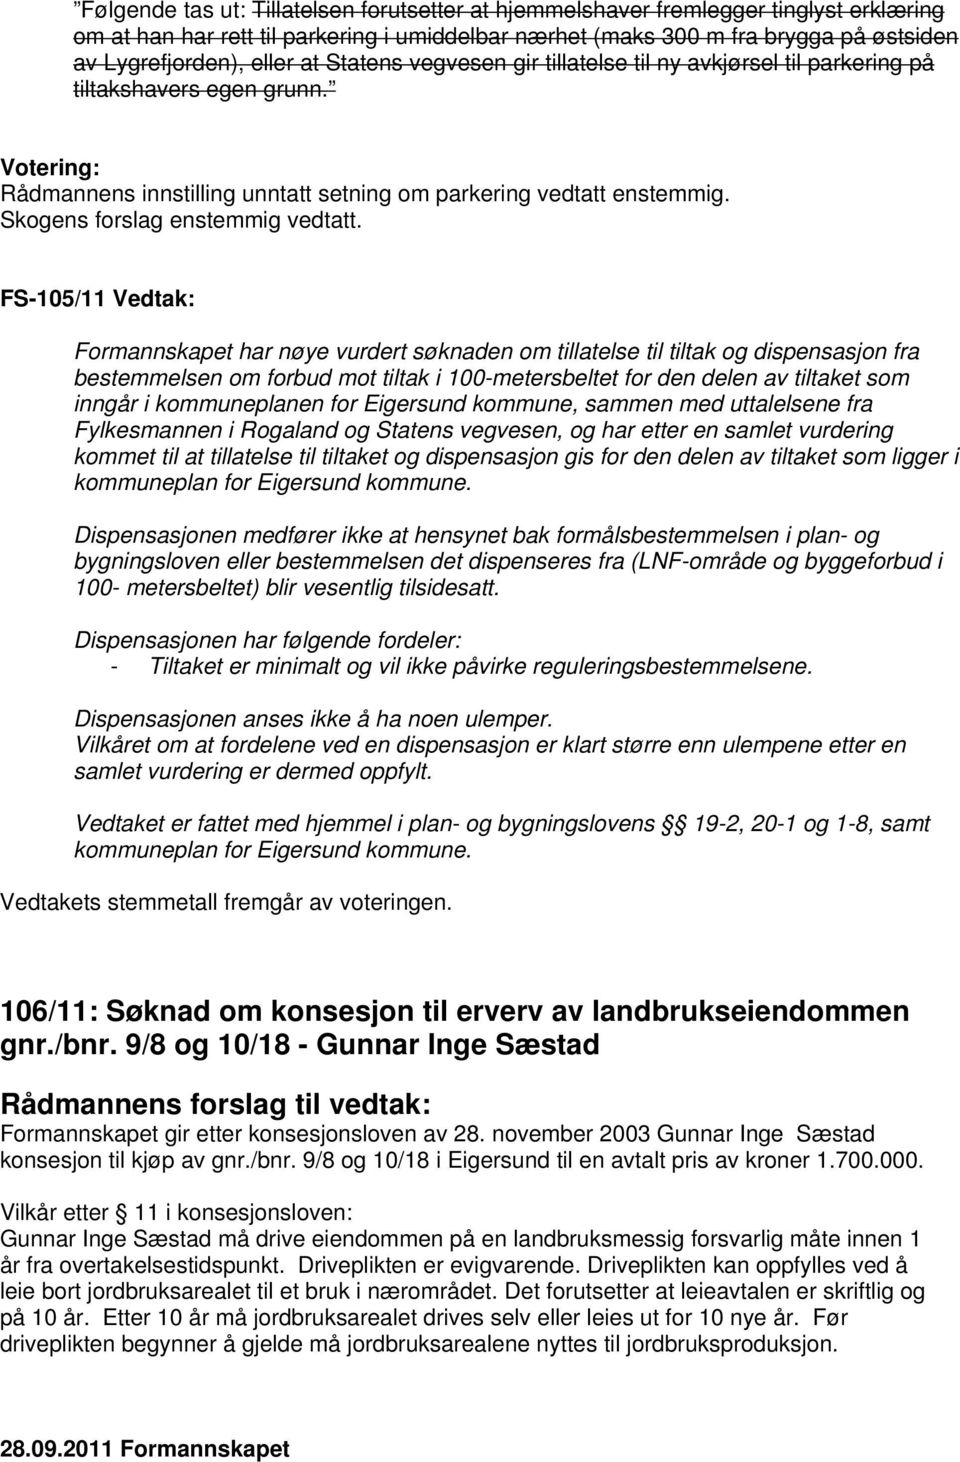 FS-105/11 Vedtak: Formannskapet har nøye vurdert søknaden om tillatelse til tiltak og dispensasjon fra bestemmelsen om forbud mot tiltak i 100-metersbeltet for den delen av tiltaket som inngår i